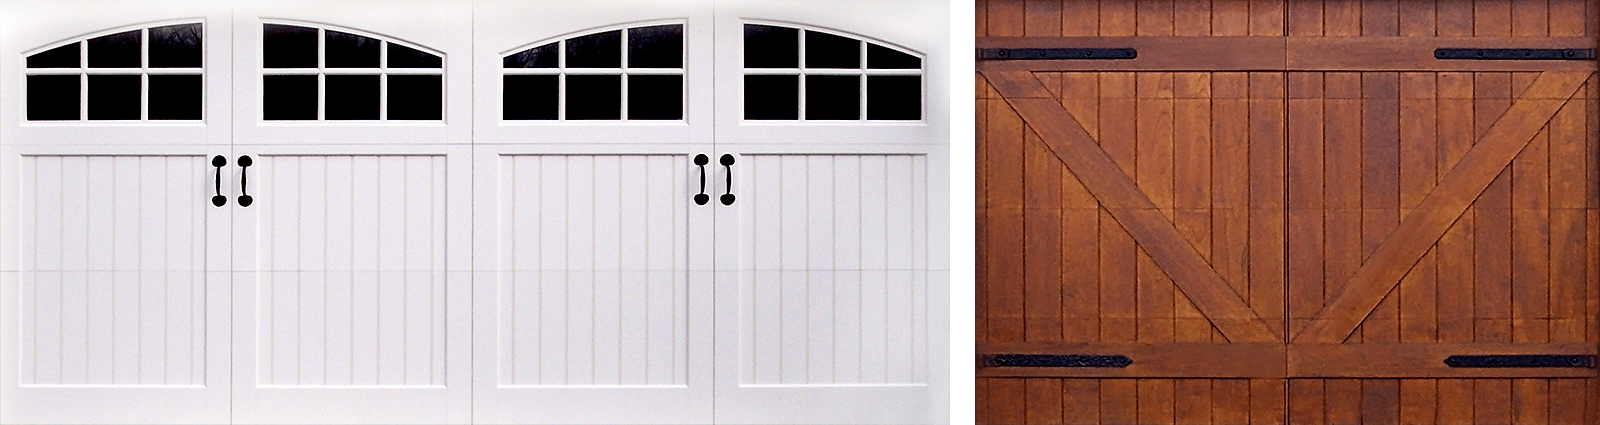 Decorative Garage Door Hardware, Decorative Garage Door Hinges And Handles